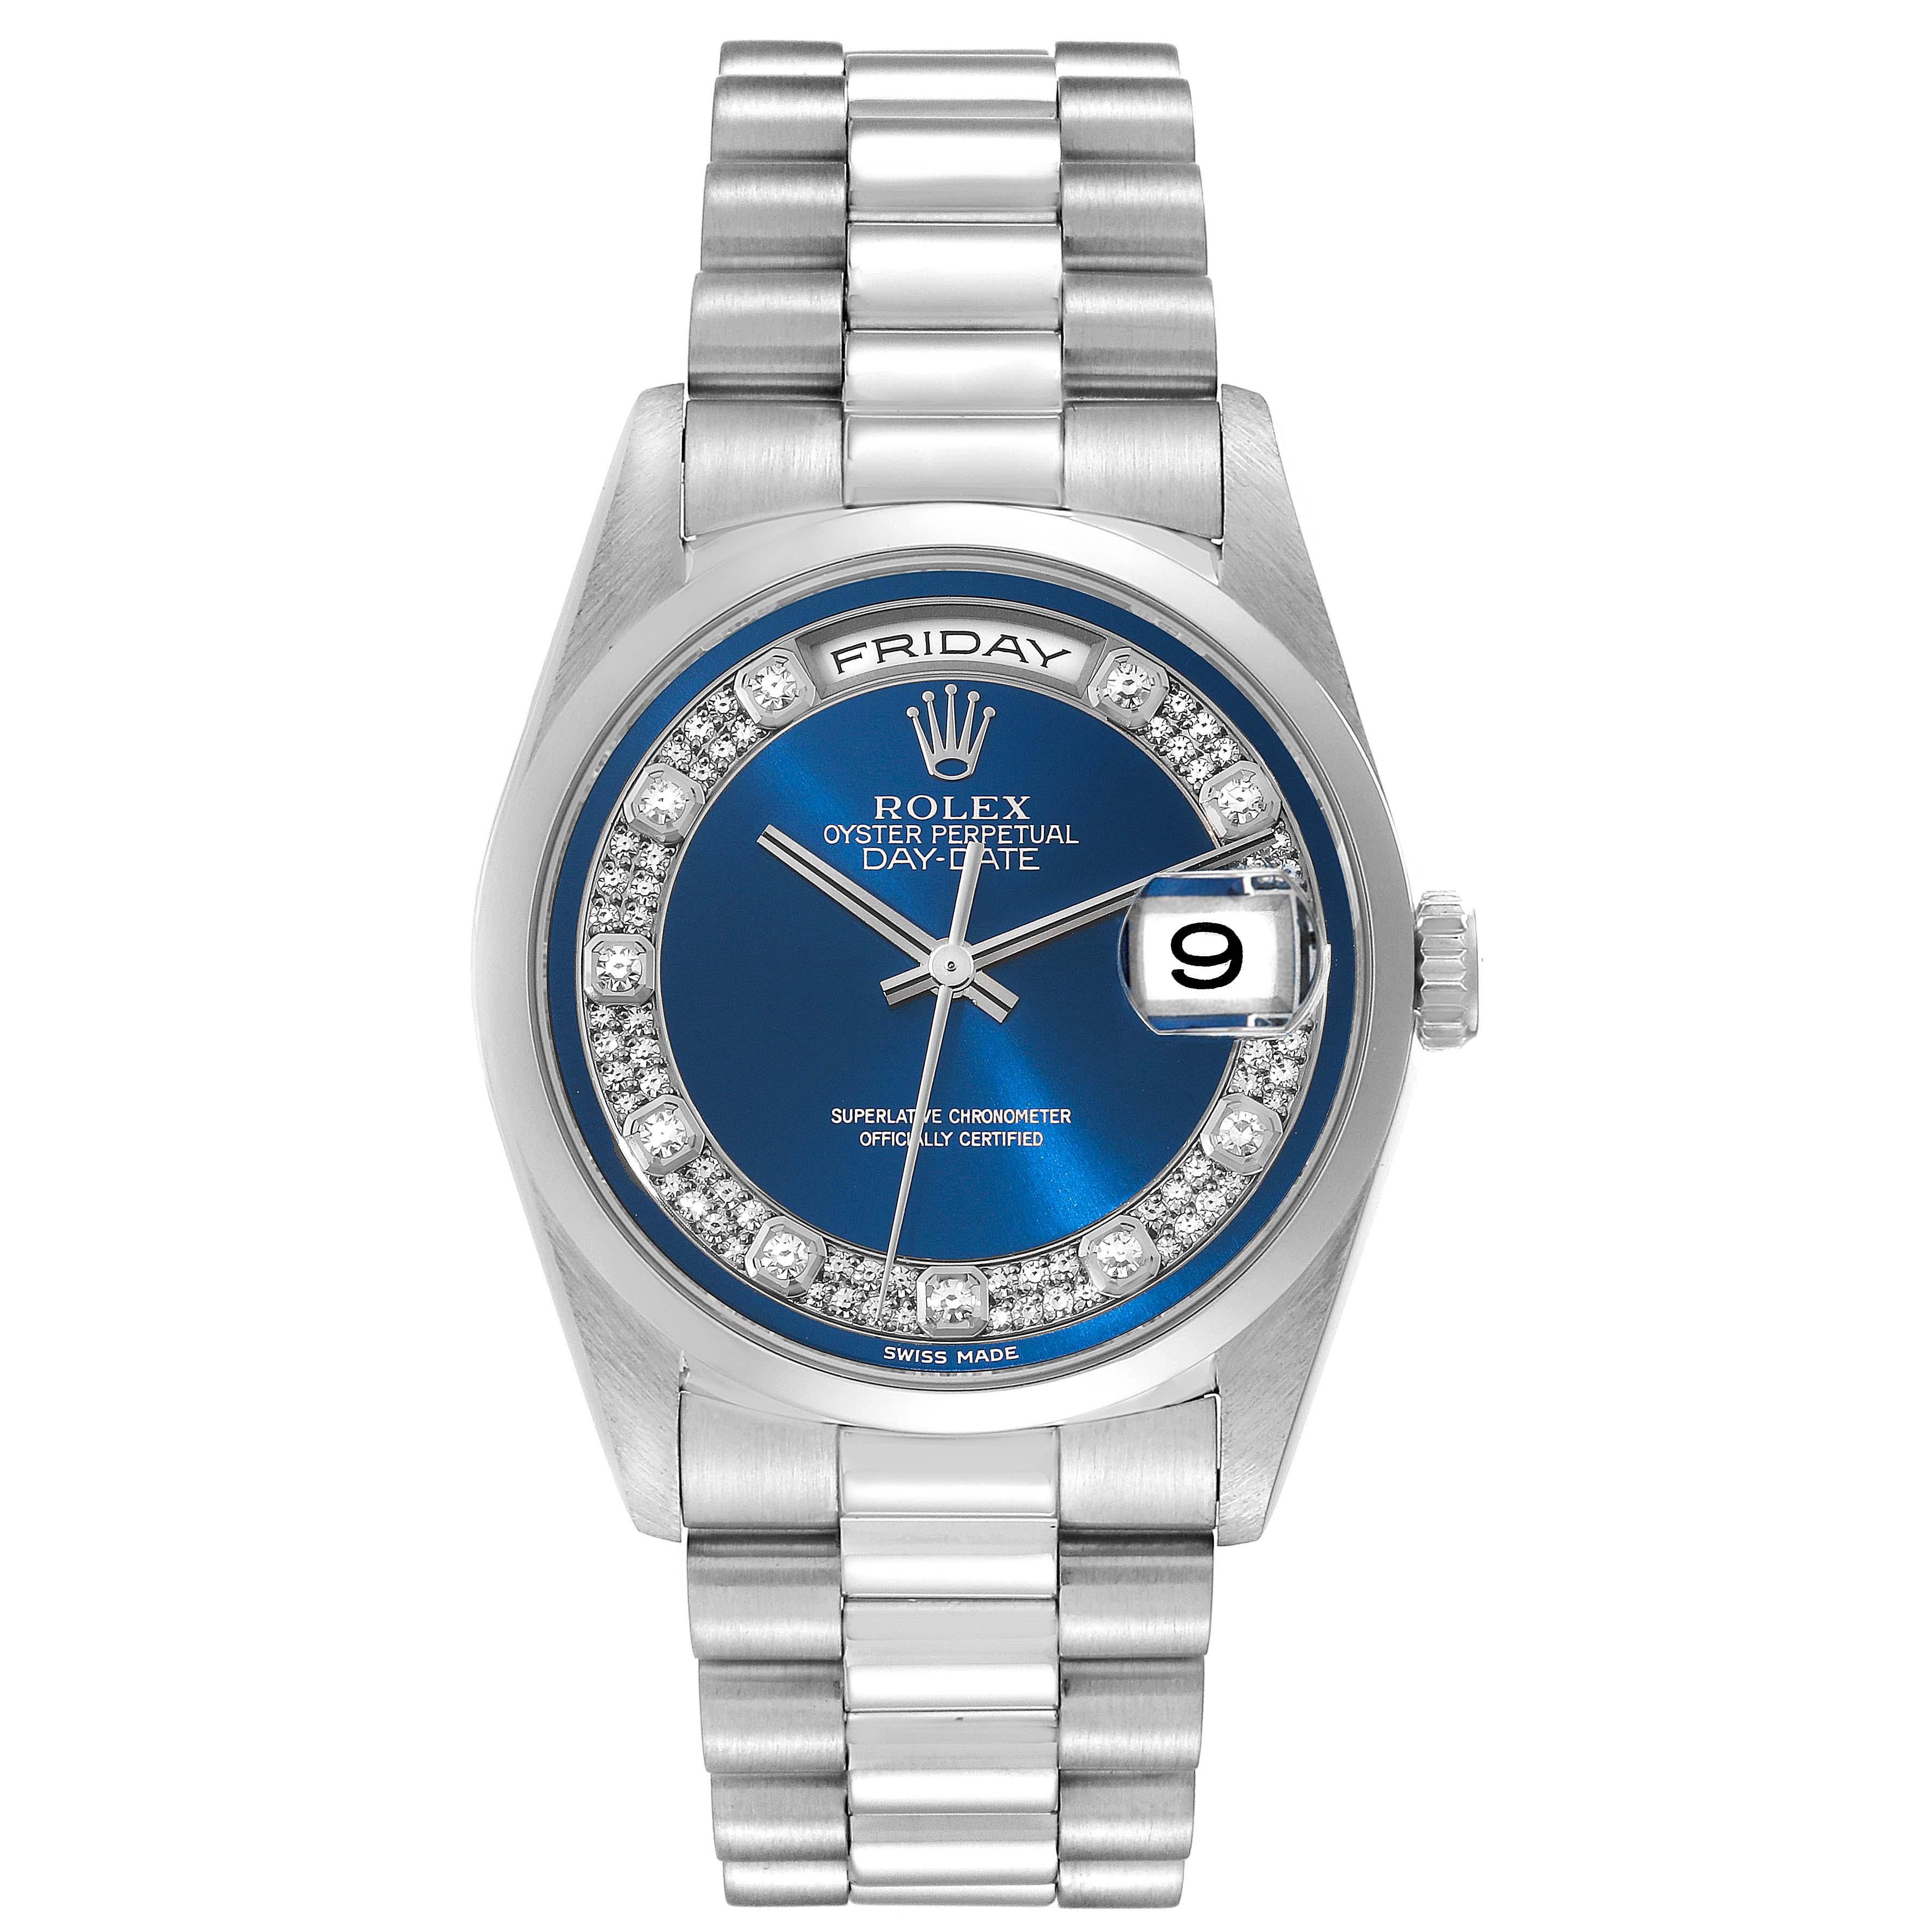 Rolex President Day-Date Platinum Blue Diamond Dial Mens Watch 18206 Box Papers. Mouvement à remontage automatique certifié officiellement chronomètre avec fonction de date rapide. Boîtier oyster en platine de 36 mm de diamètre. Logo Rolex sur une